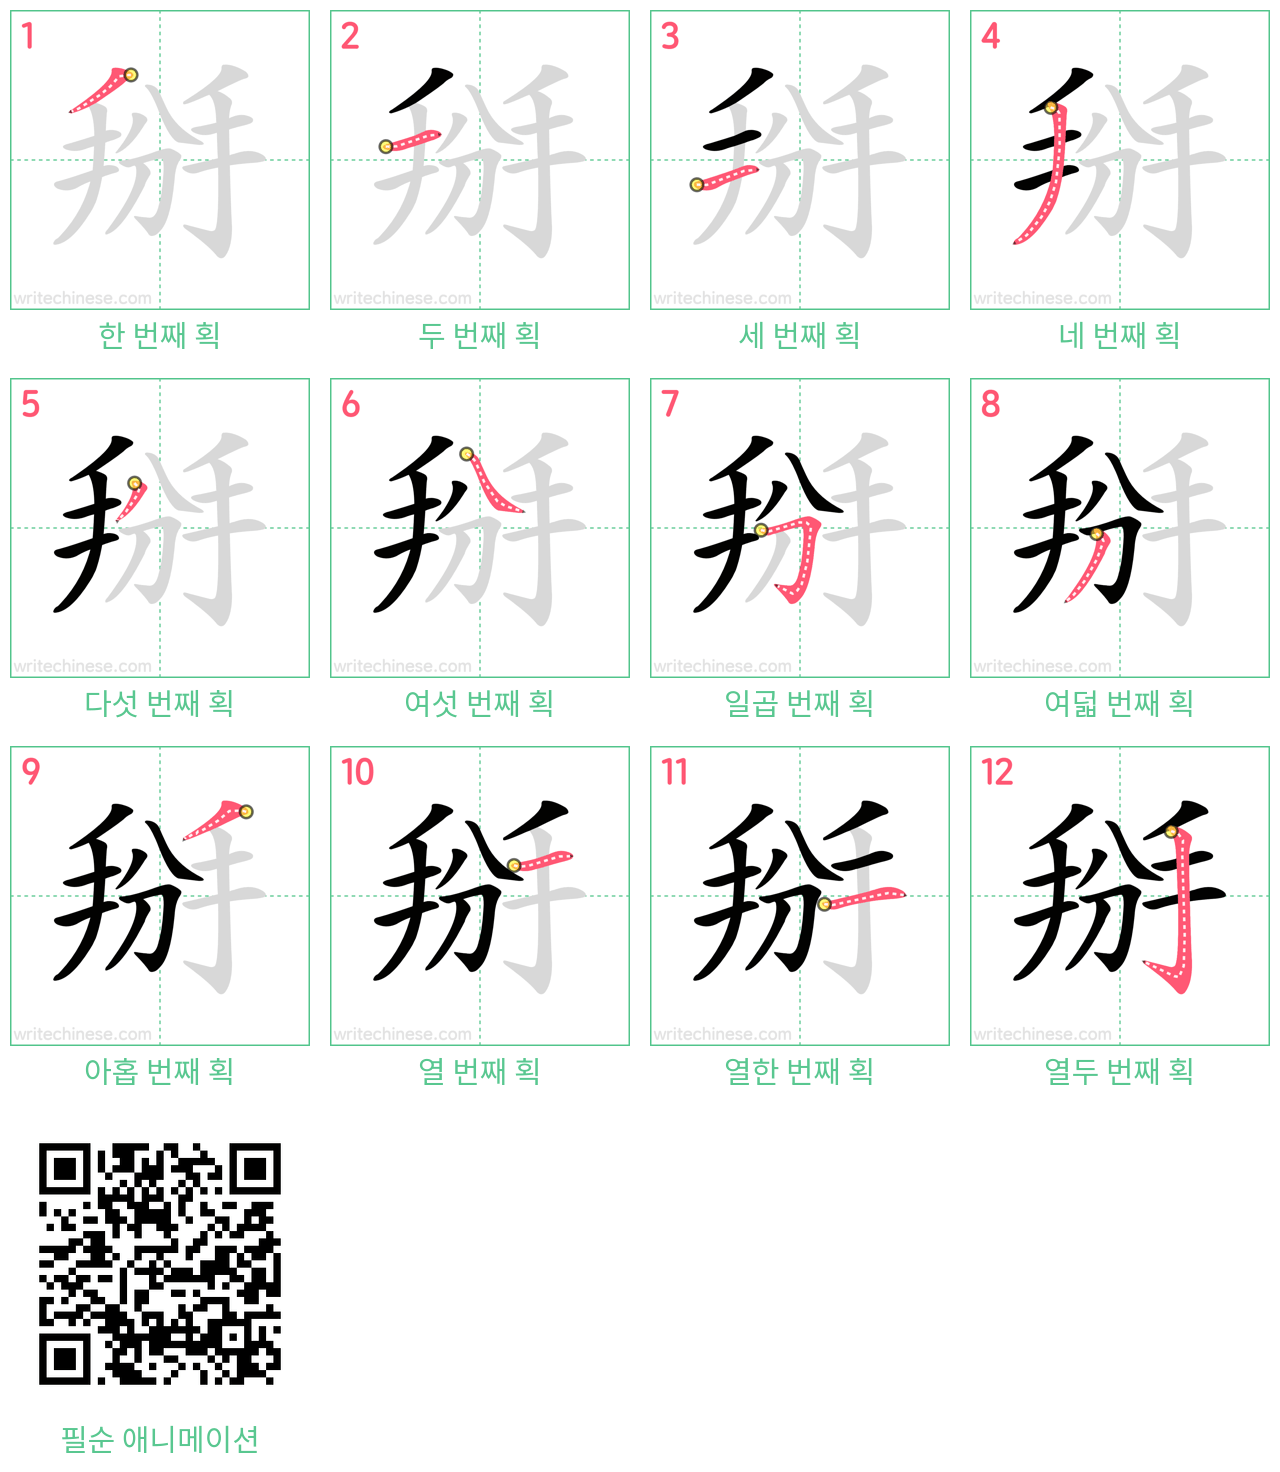 掰 step-by-step stroke order diagrams